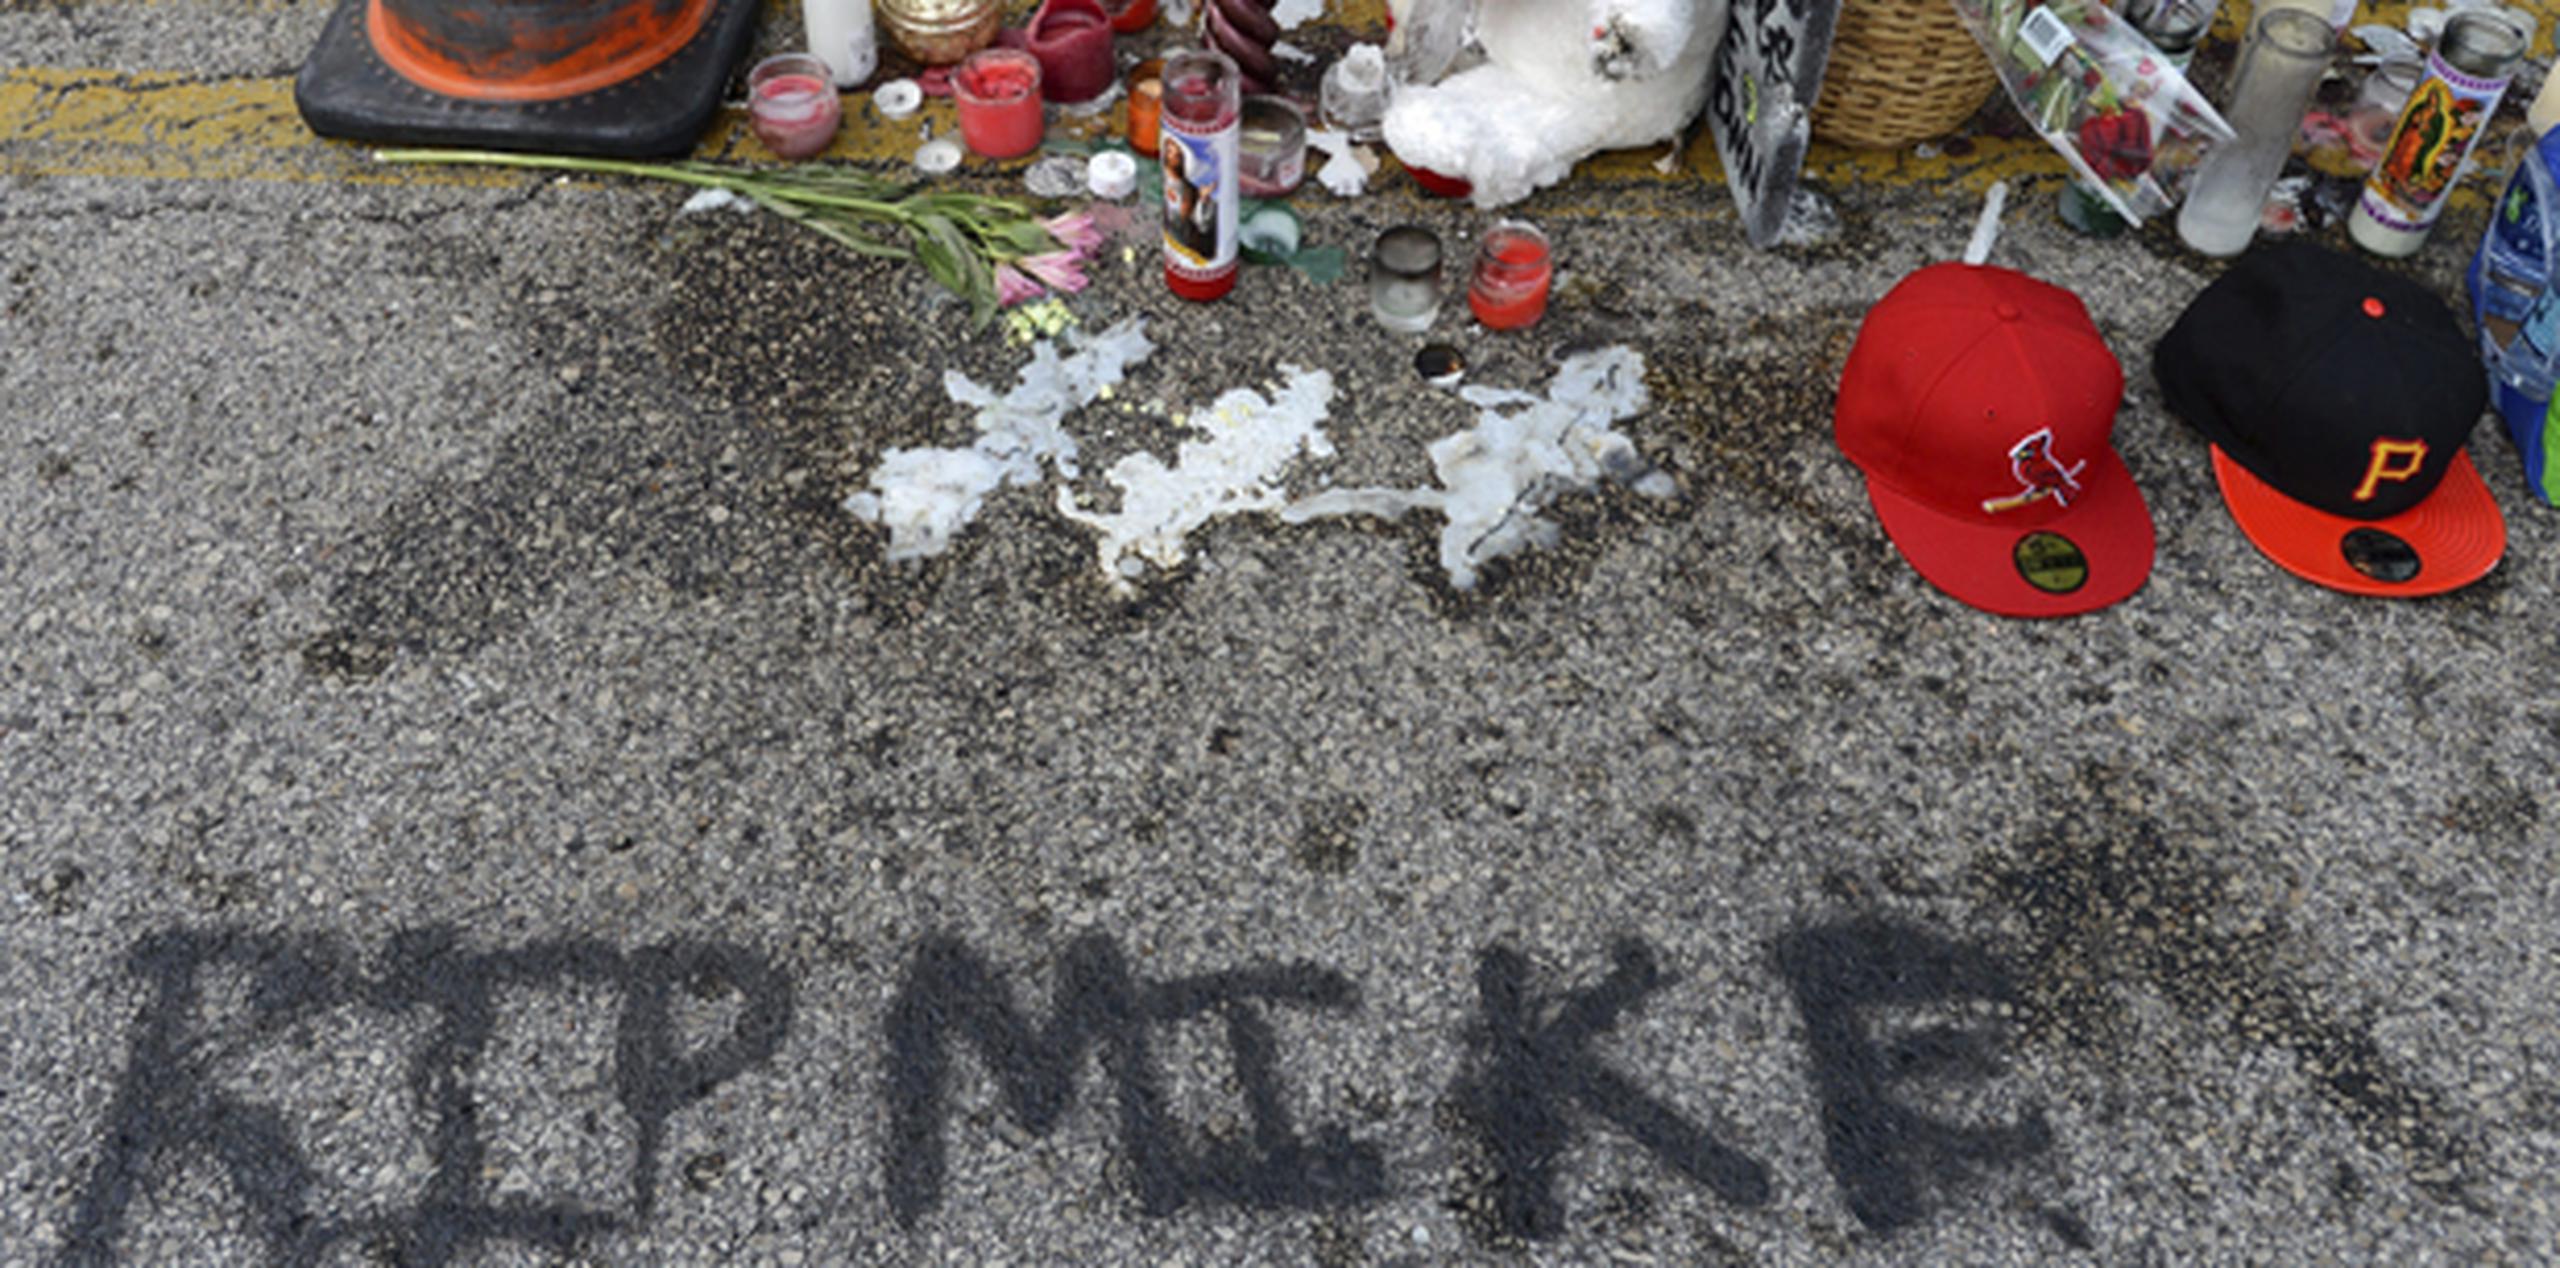 Flores, velas y peluches marcan el lugar donde falleció el joven Michael Brown en Ferguson, Misuri.  (EFE)